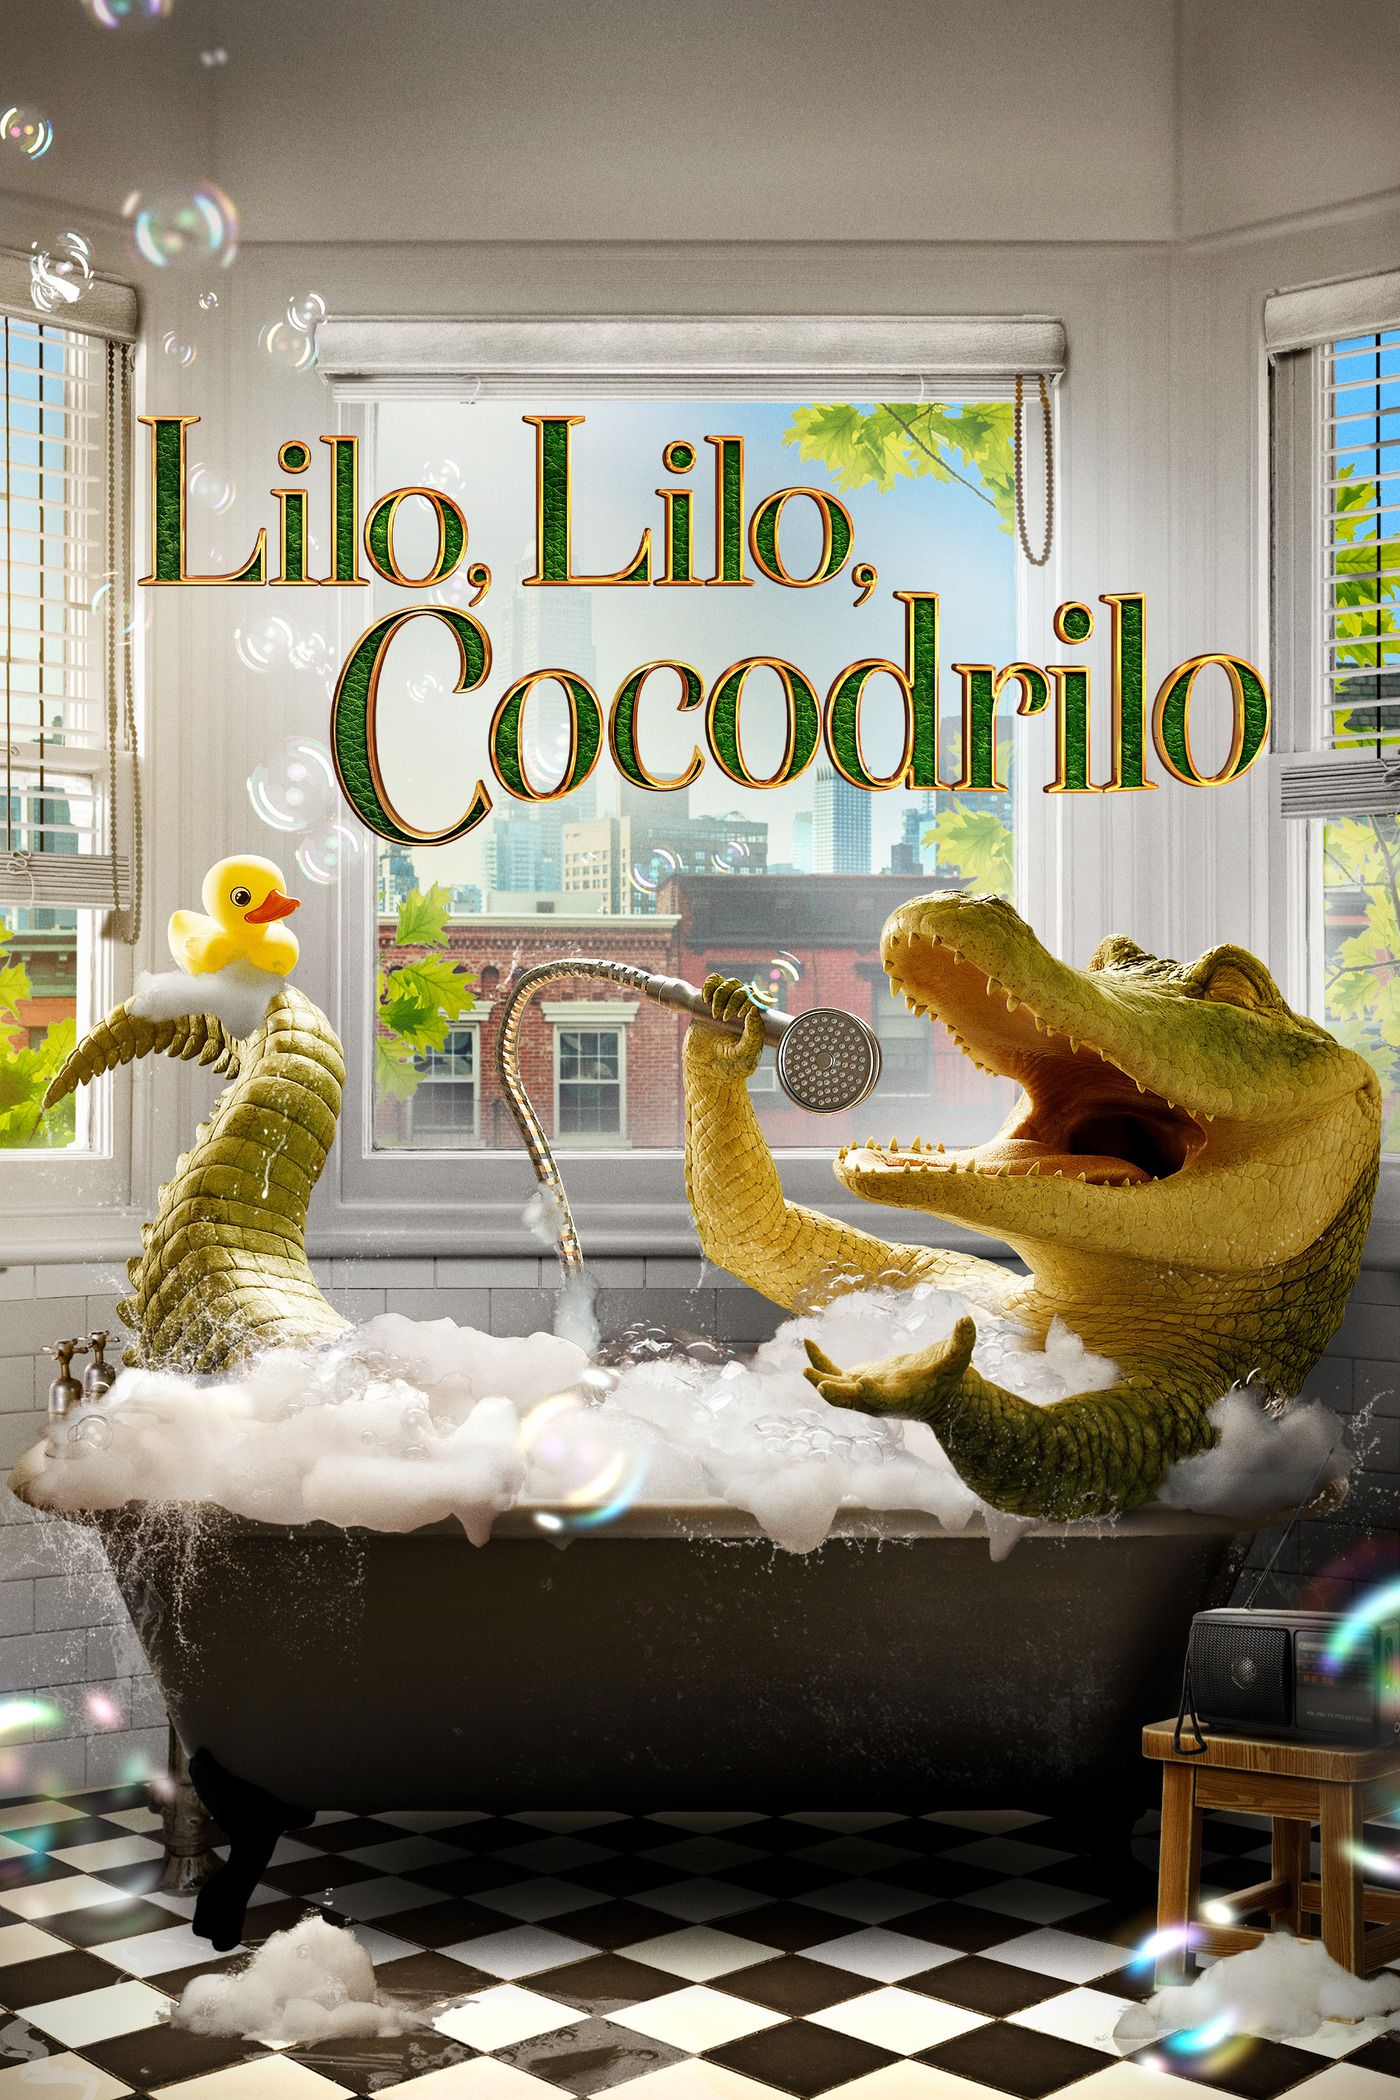 Lilo Cocodrilo